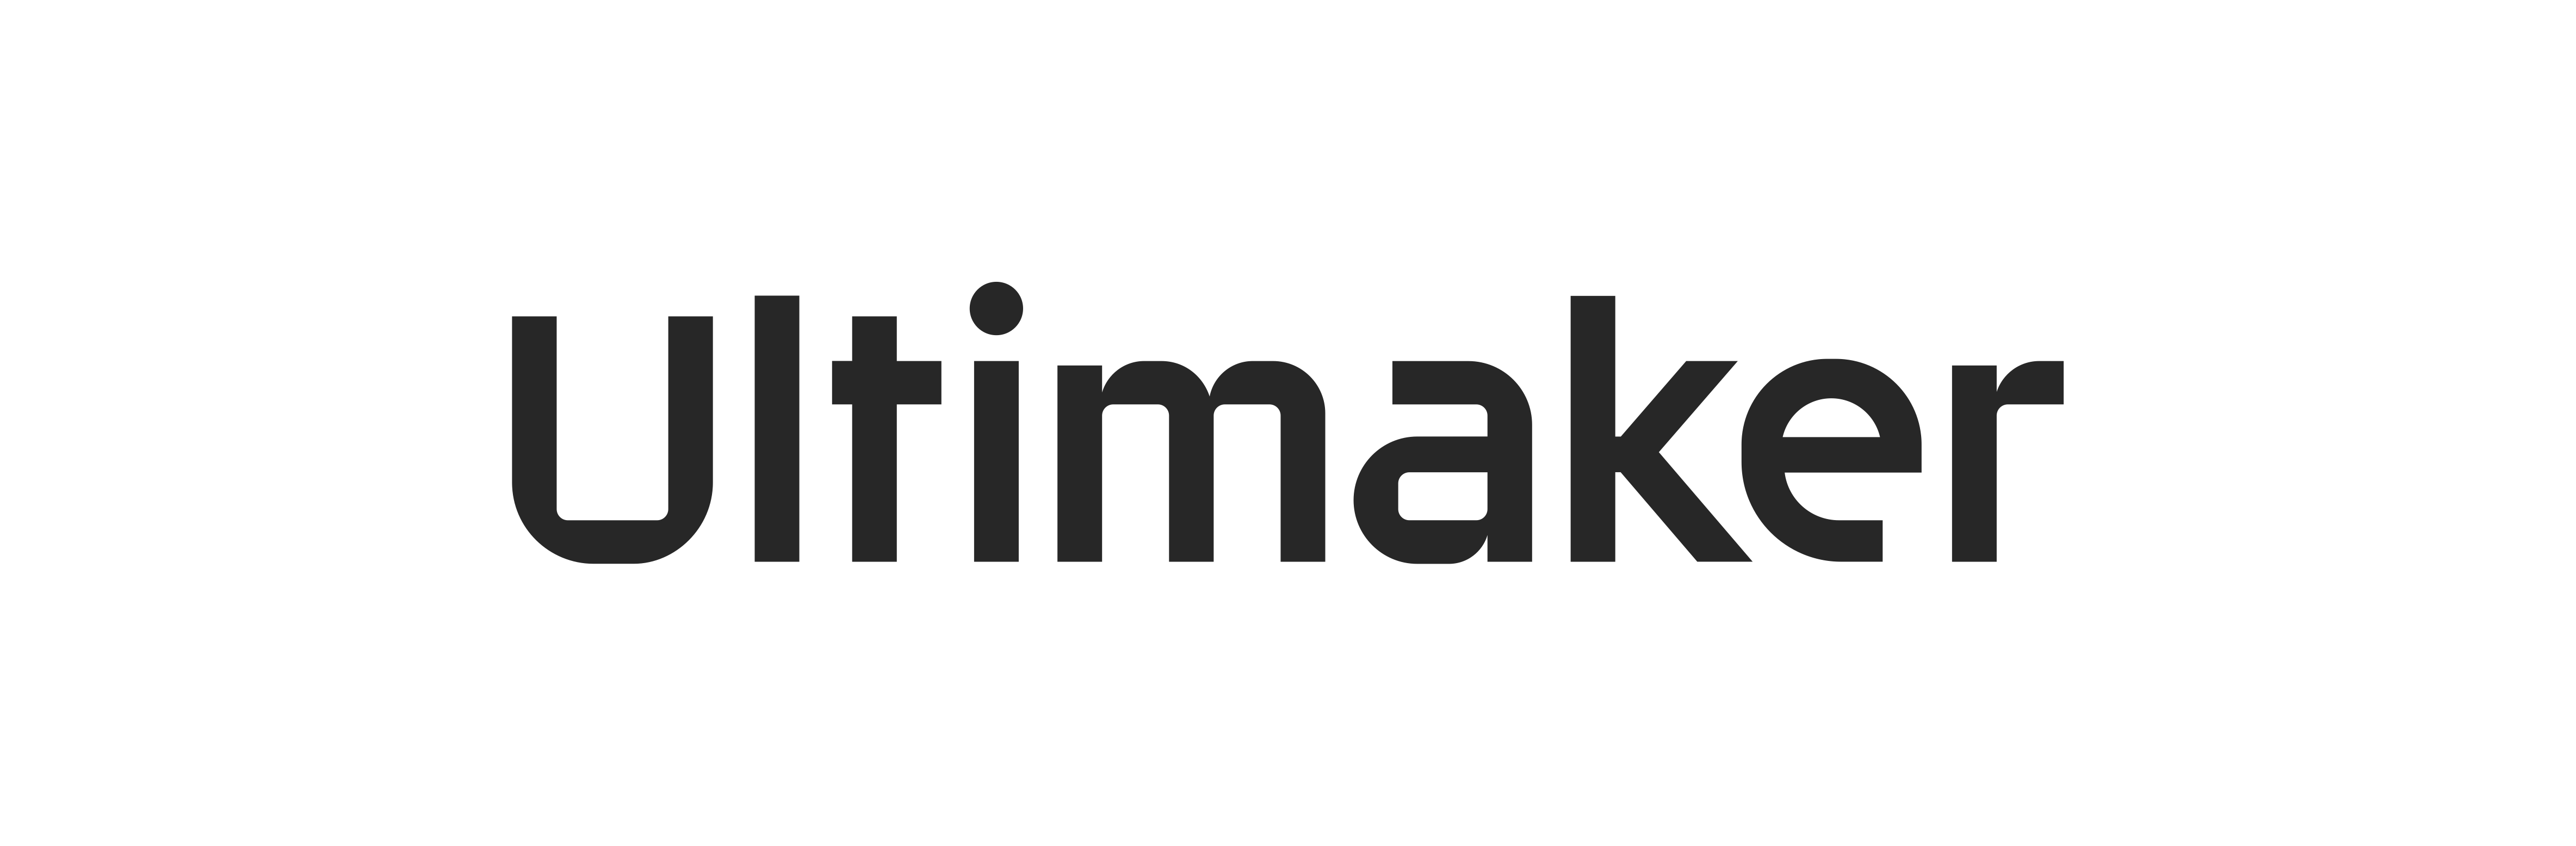 Ultimaker_logo2